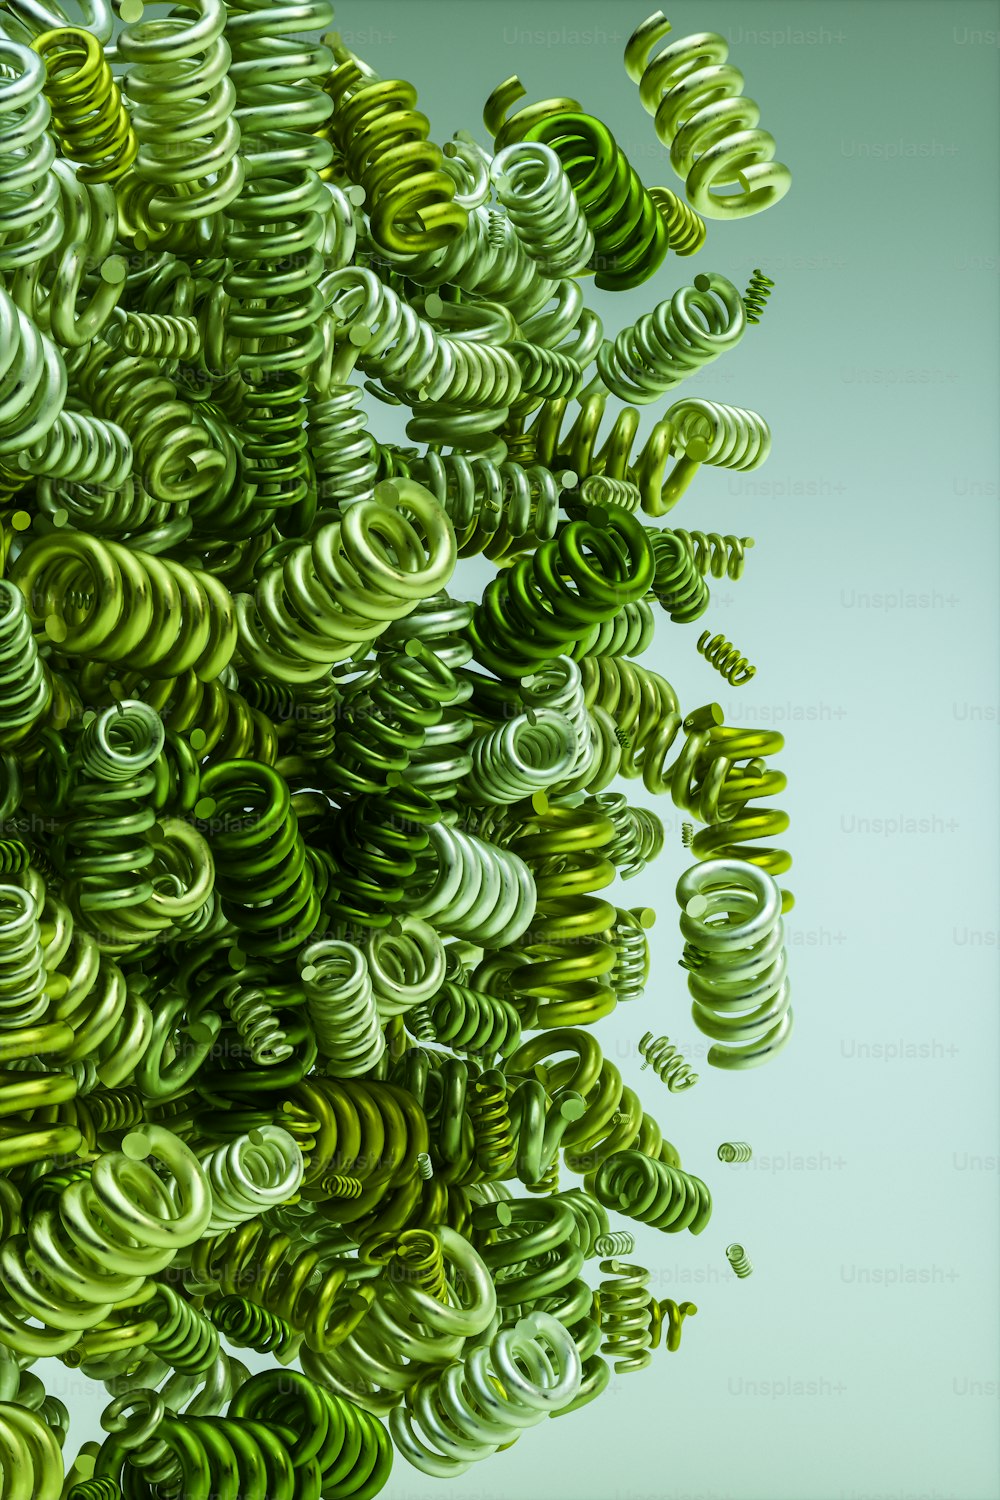 Ein Haufen grüner Spiralen, die in der Luft schweben